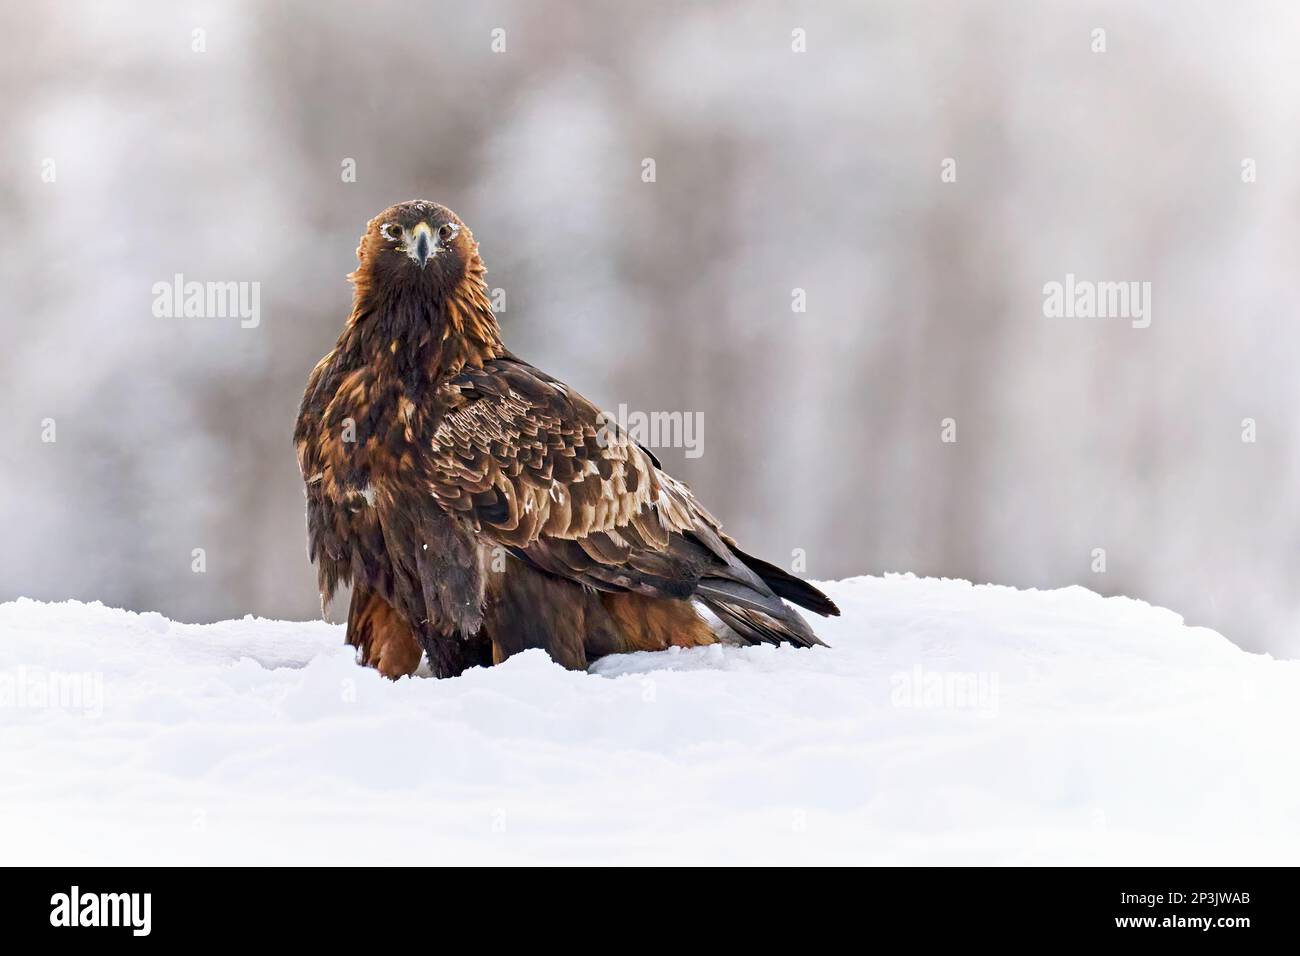 Aquila reale nel suo ambiente naturale Foto Stock